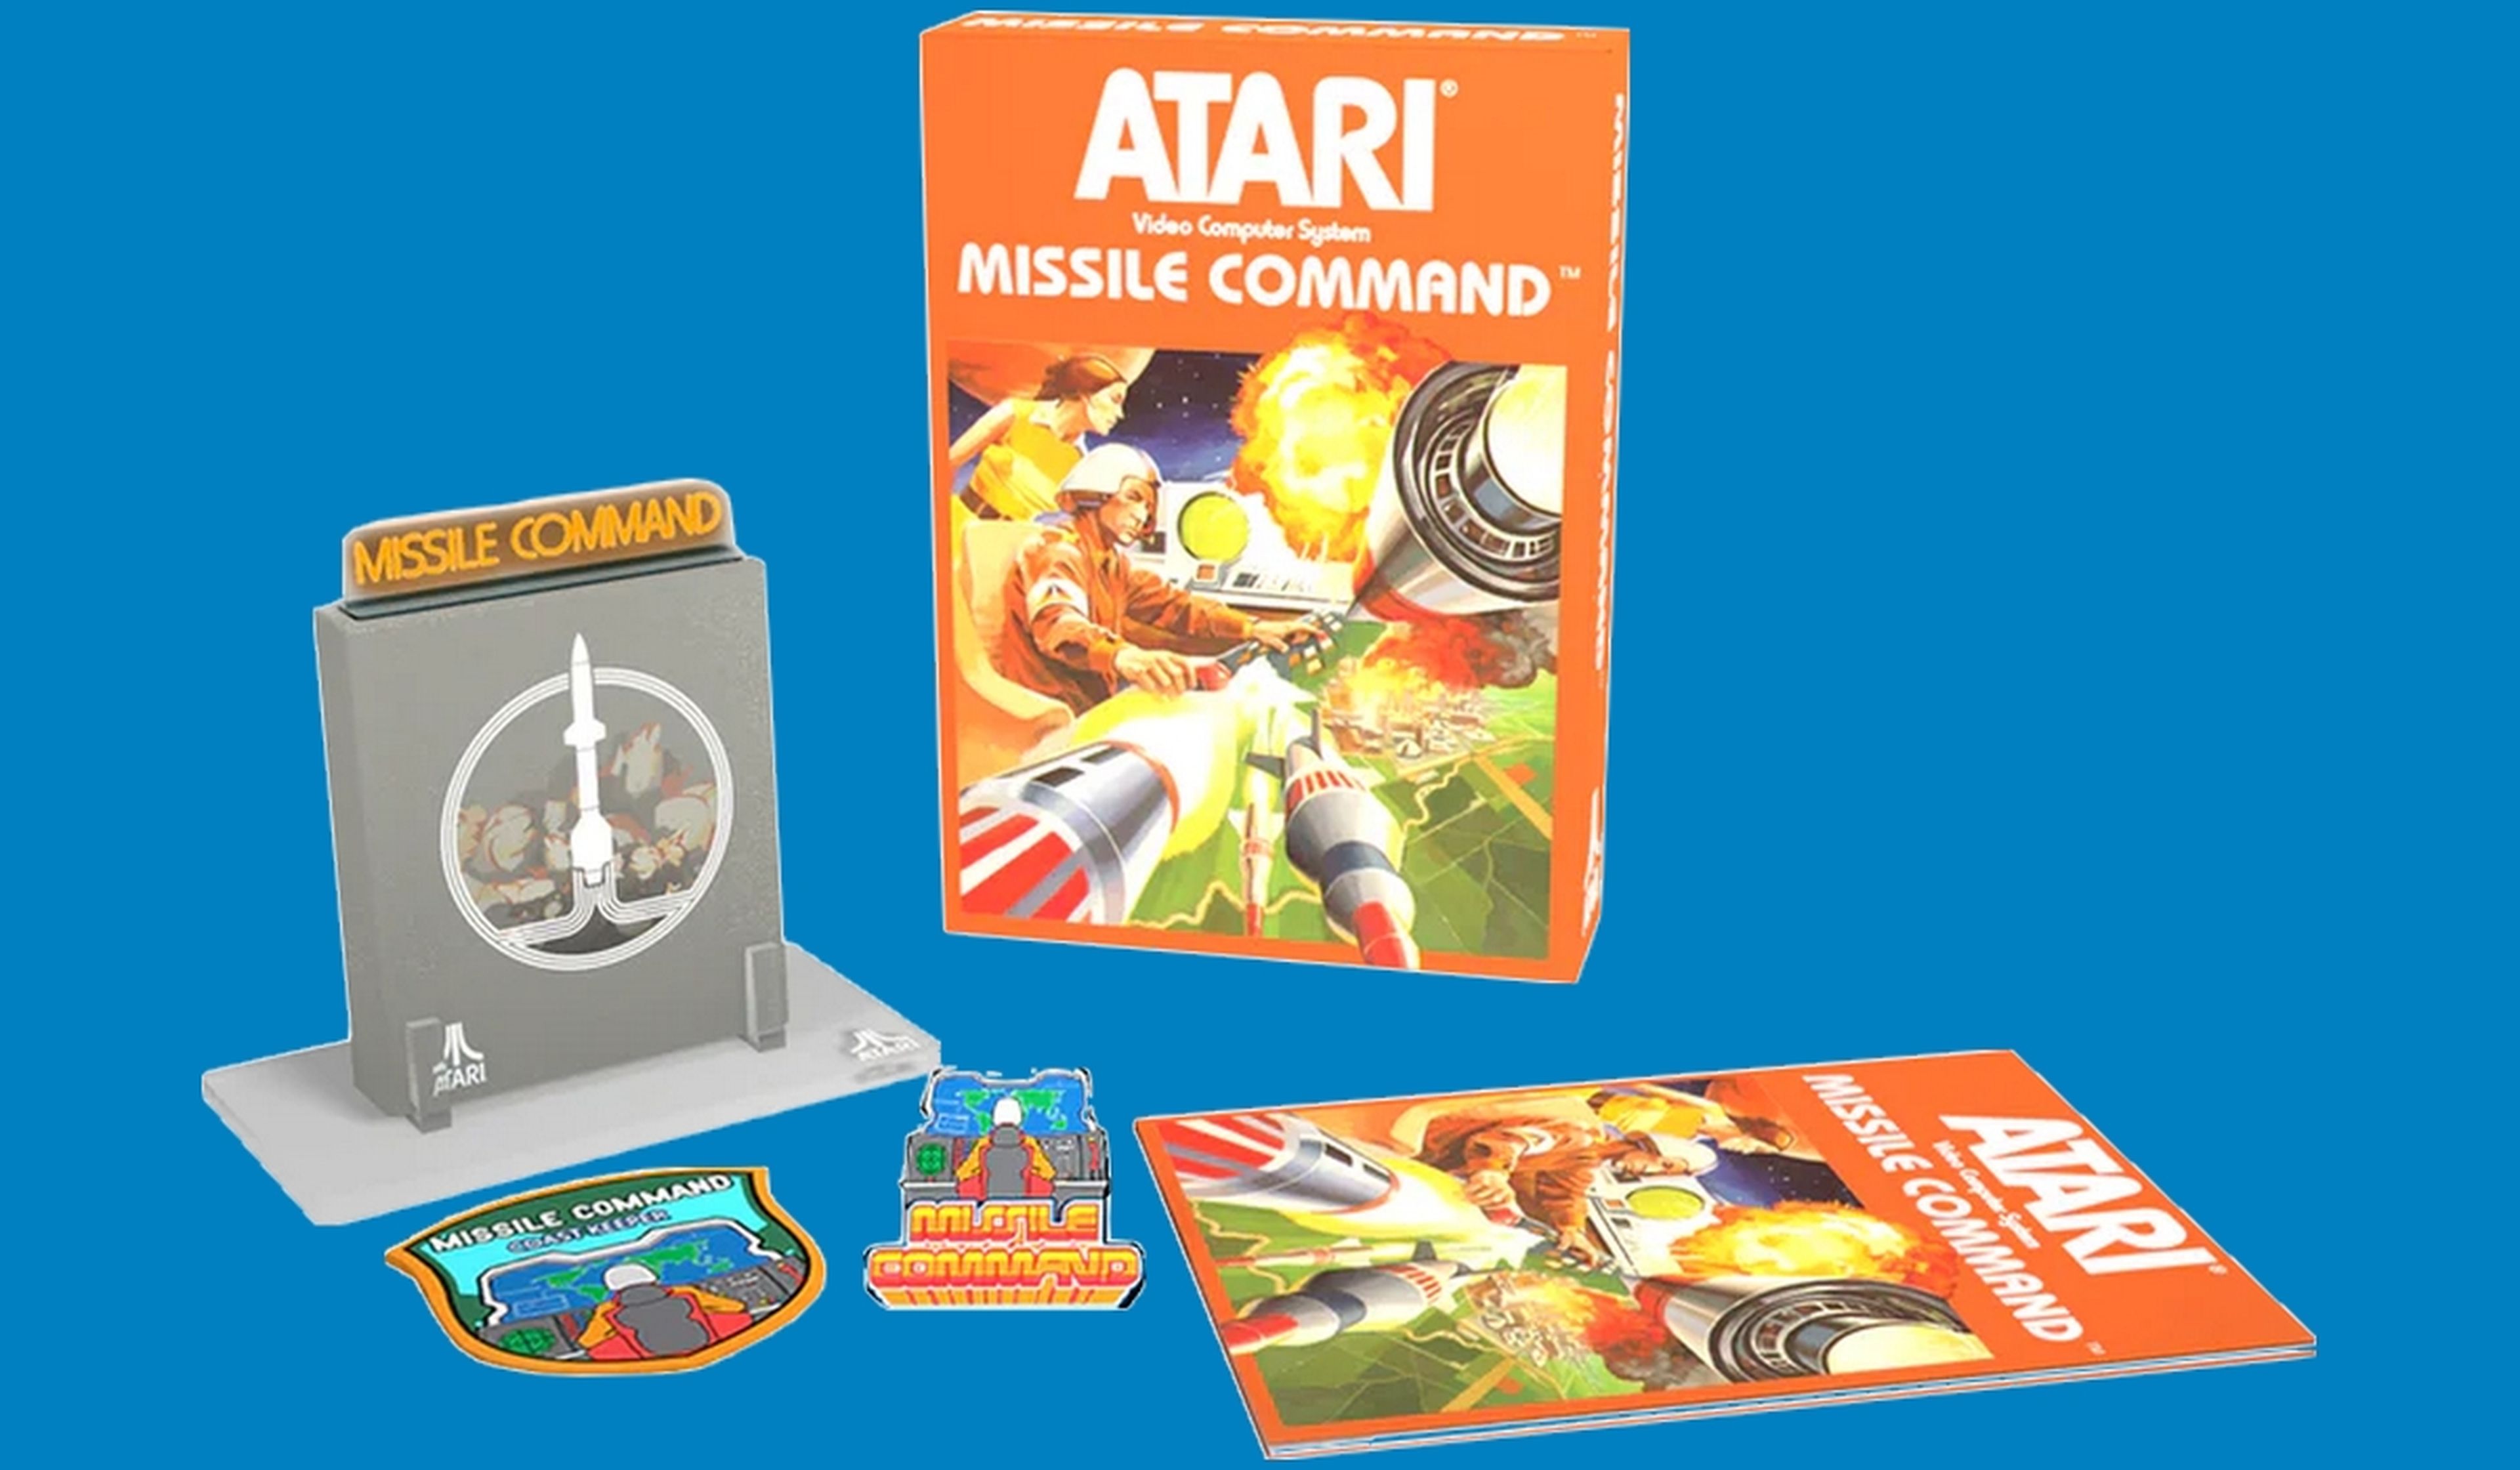 Atari celebra su 50 Aniversario lanzando dos nuevos cartuchos para Atari 2600, una consola de 1977